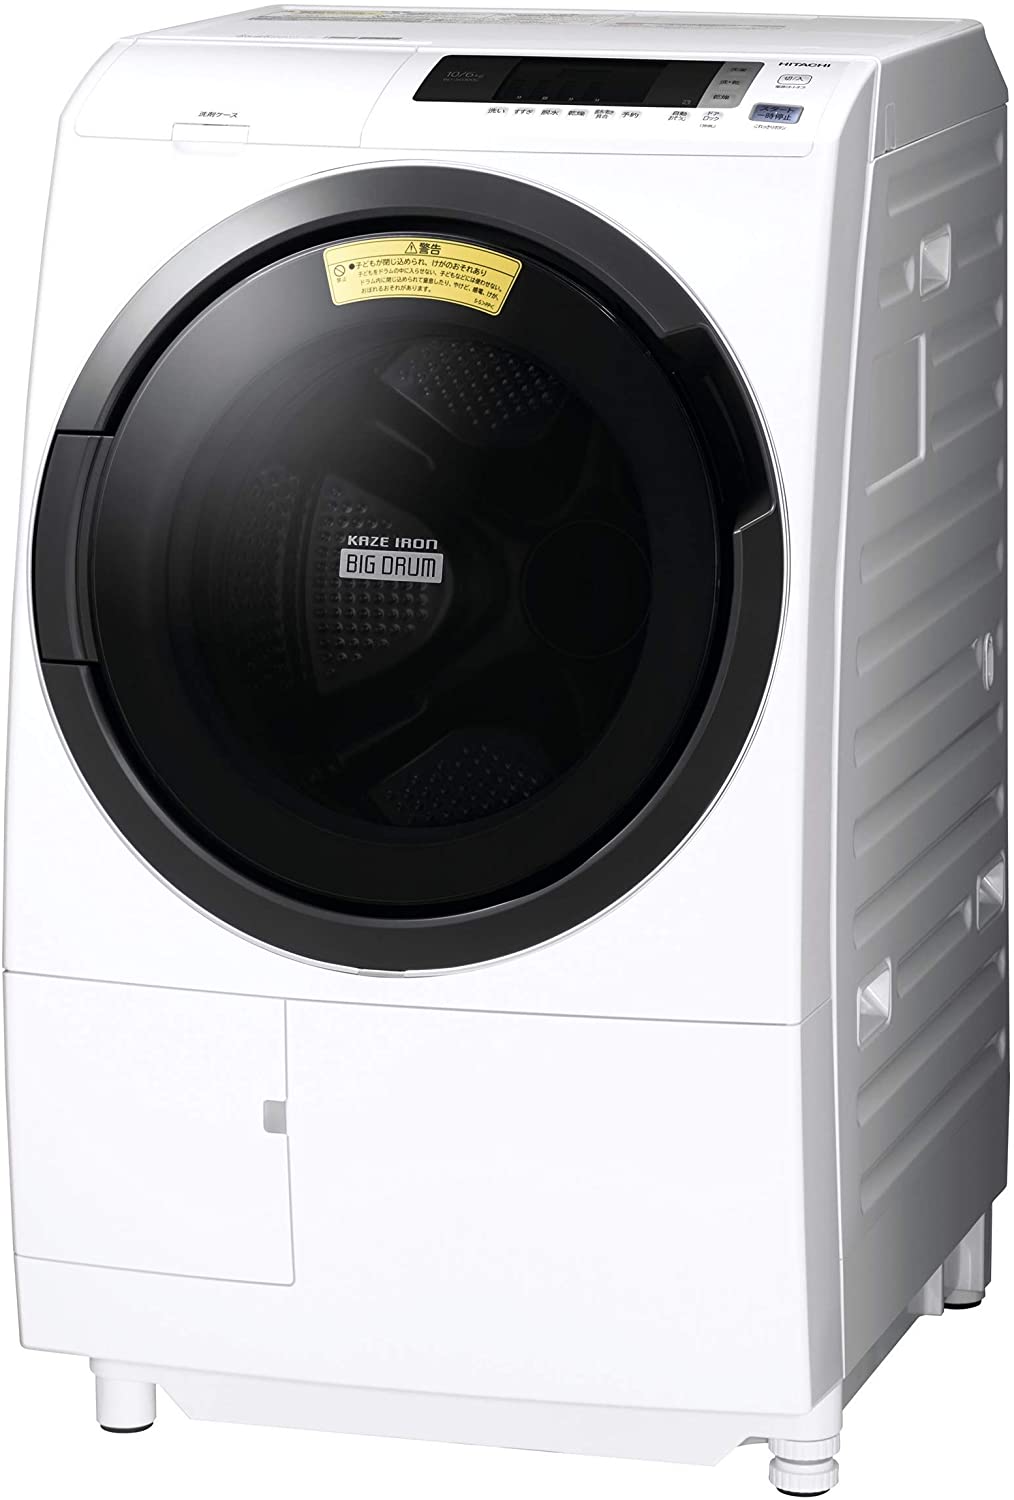 日立(HITACHI) ビッグドラム 洗濯乾燥機 BD-SG100Cの商品画像1 